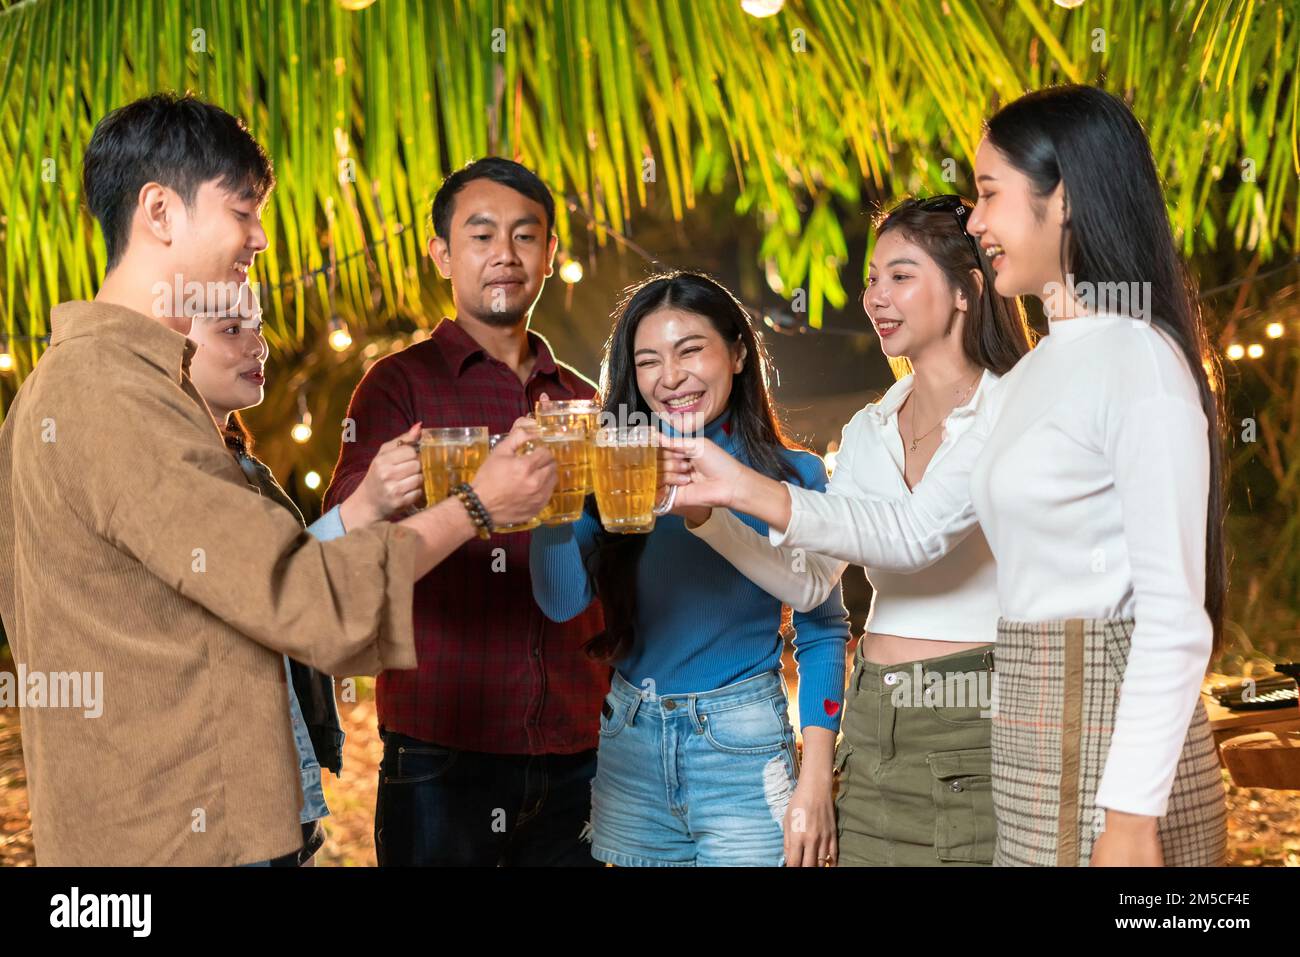 Un groupe d'amis se réjouisse de se tenir debout et de griller des bières à la fête. Banque D'Images